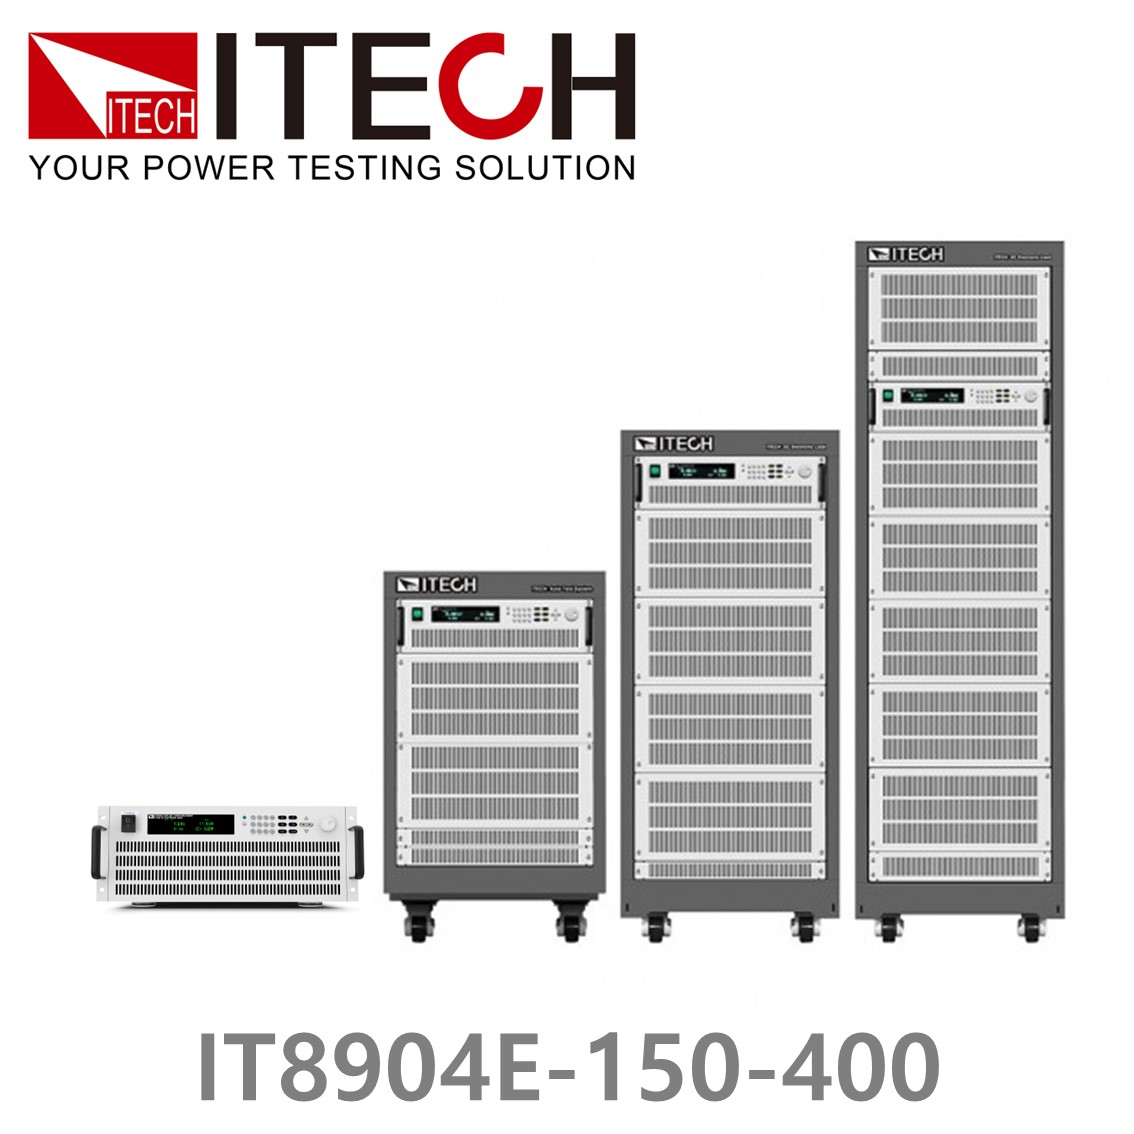 [ ITECH ] IT8904E-150-400  고성능 고전력 DC 전자로드 150V/400A/ 4kW (4U)